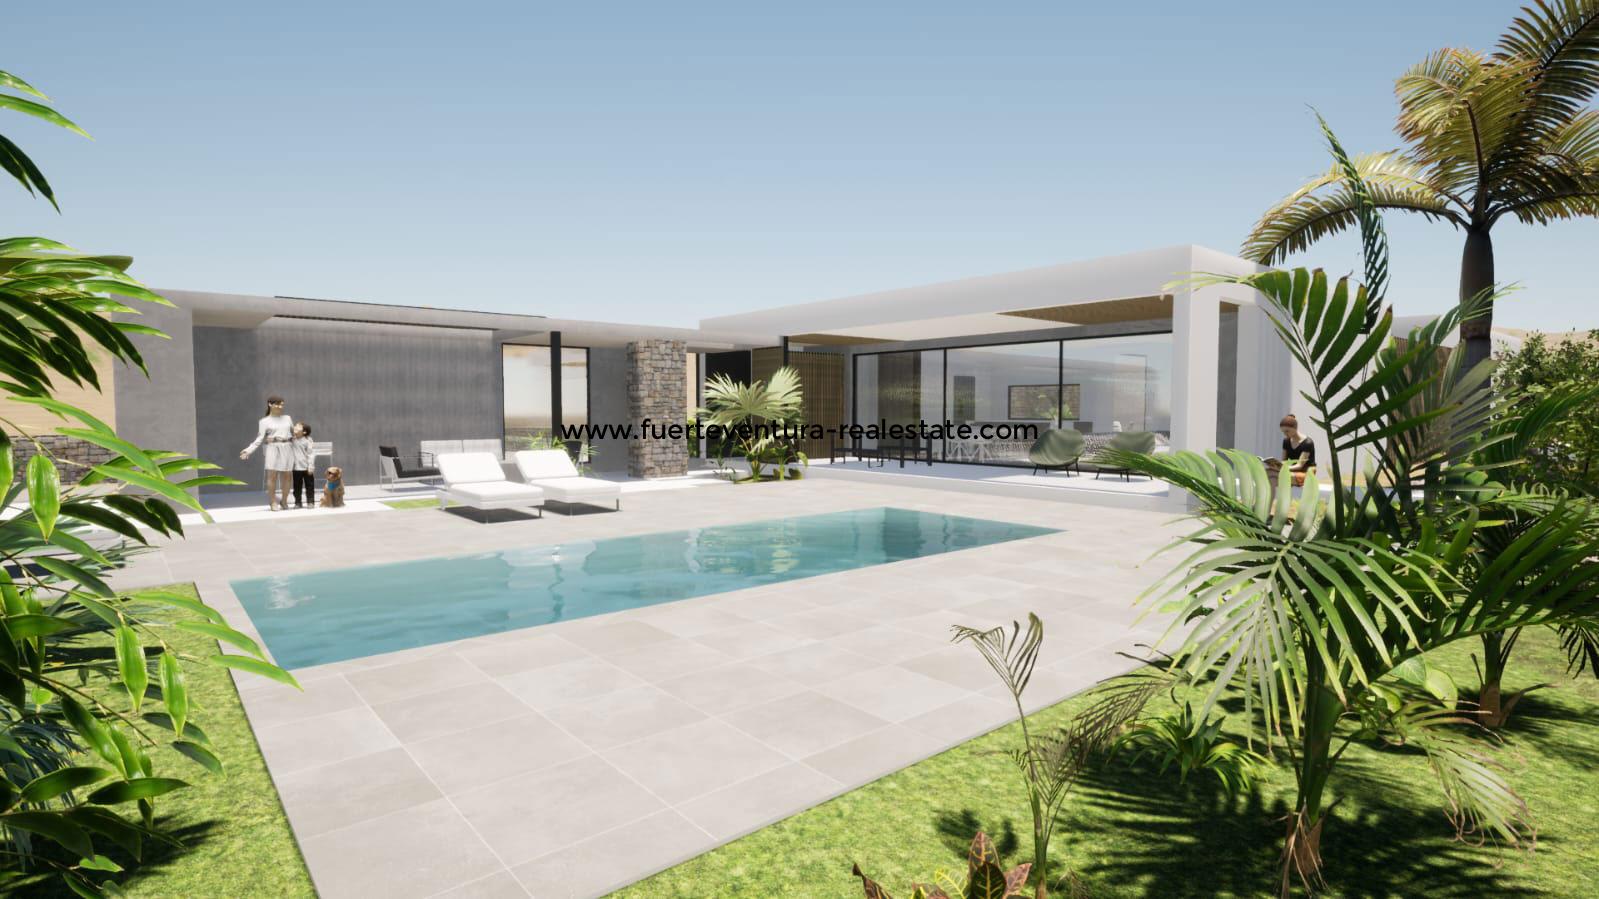  Villa moderna con piscina in costruzione a Lajares